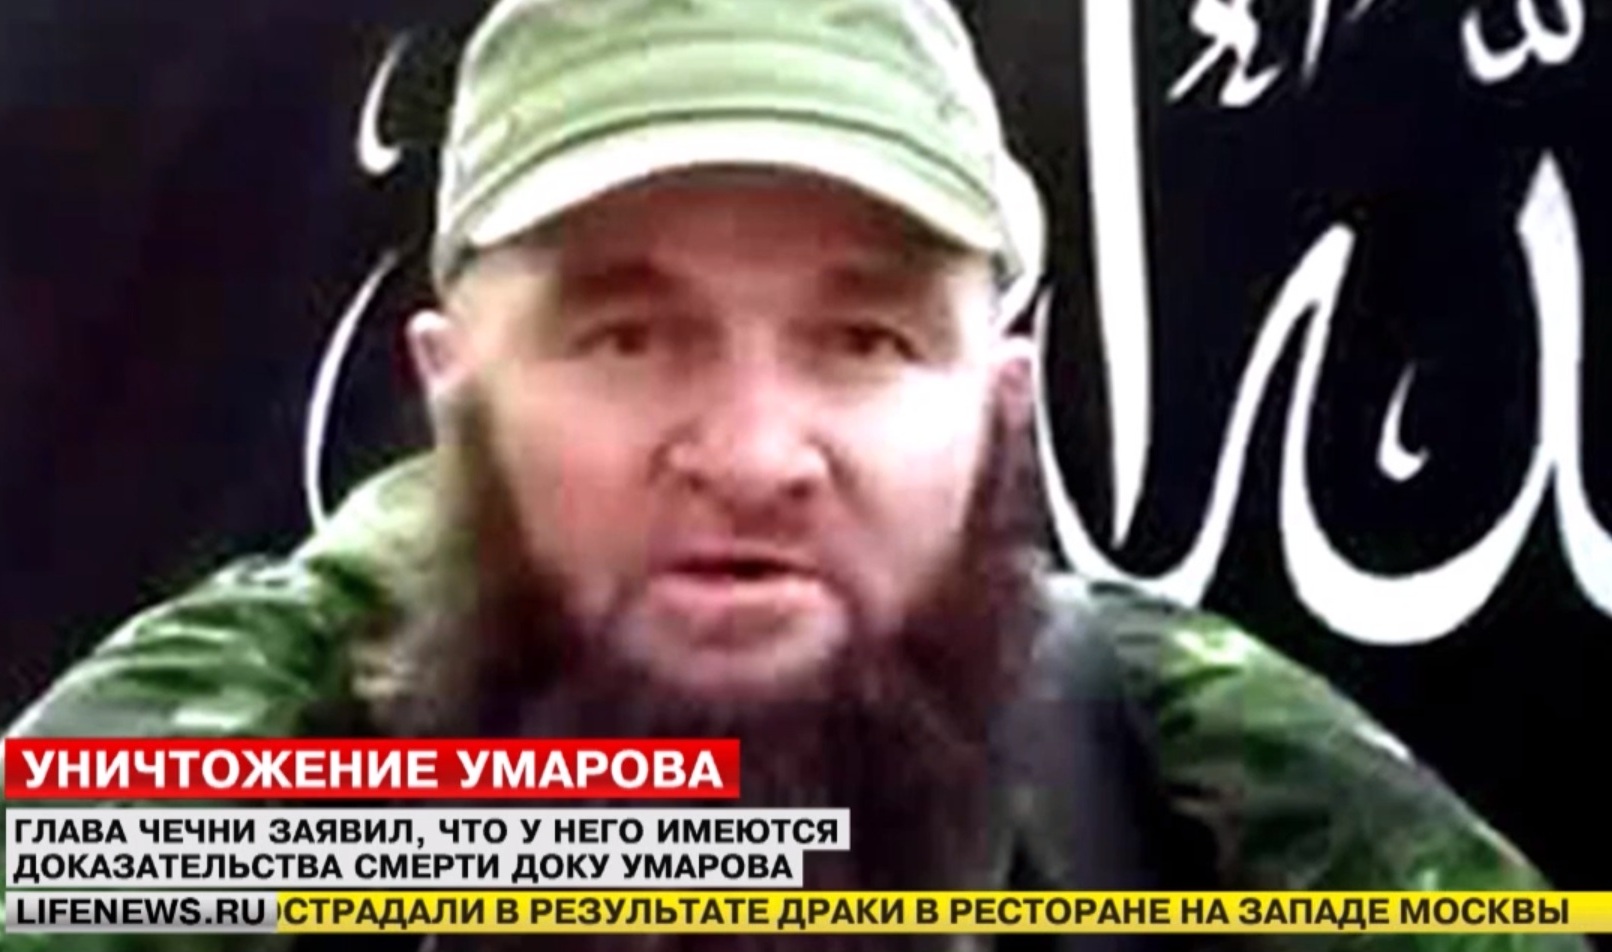 Обявиха за мъртъв най-издирвания терорист в Русия - Доку Умаров!